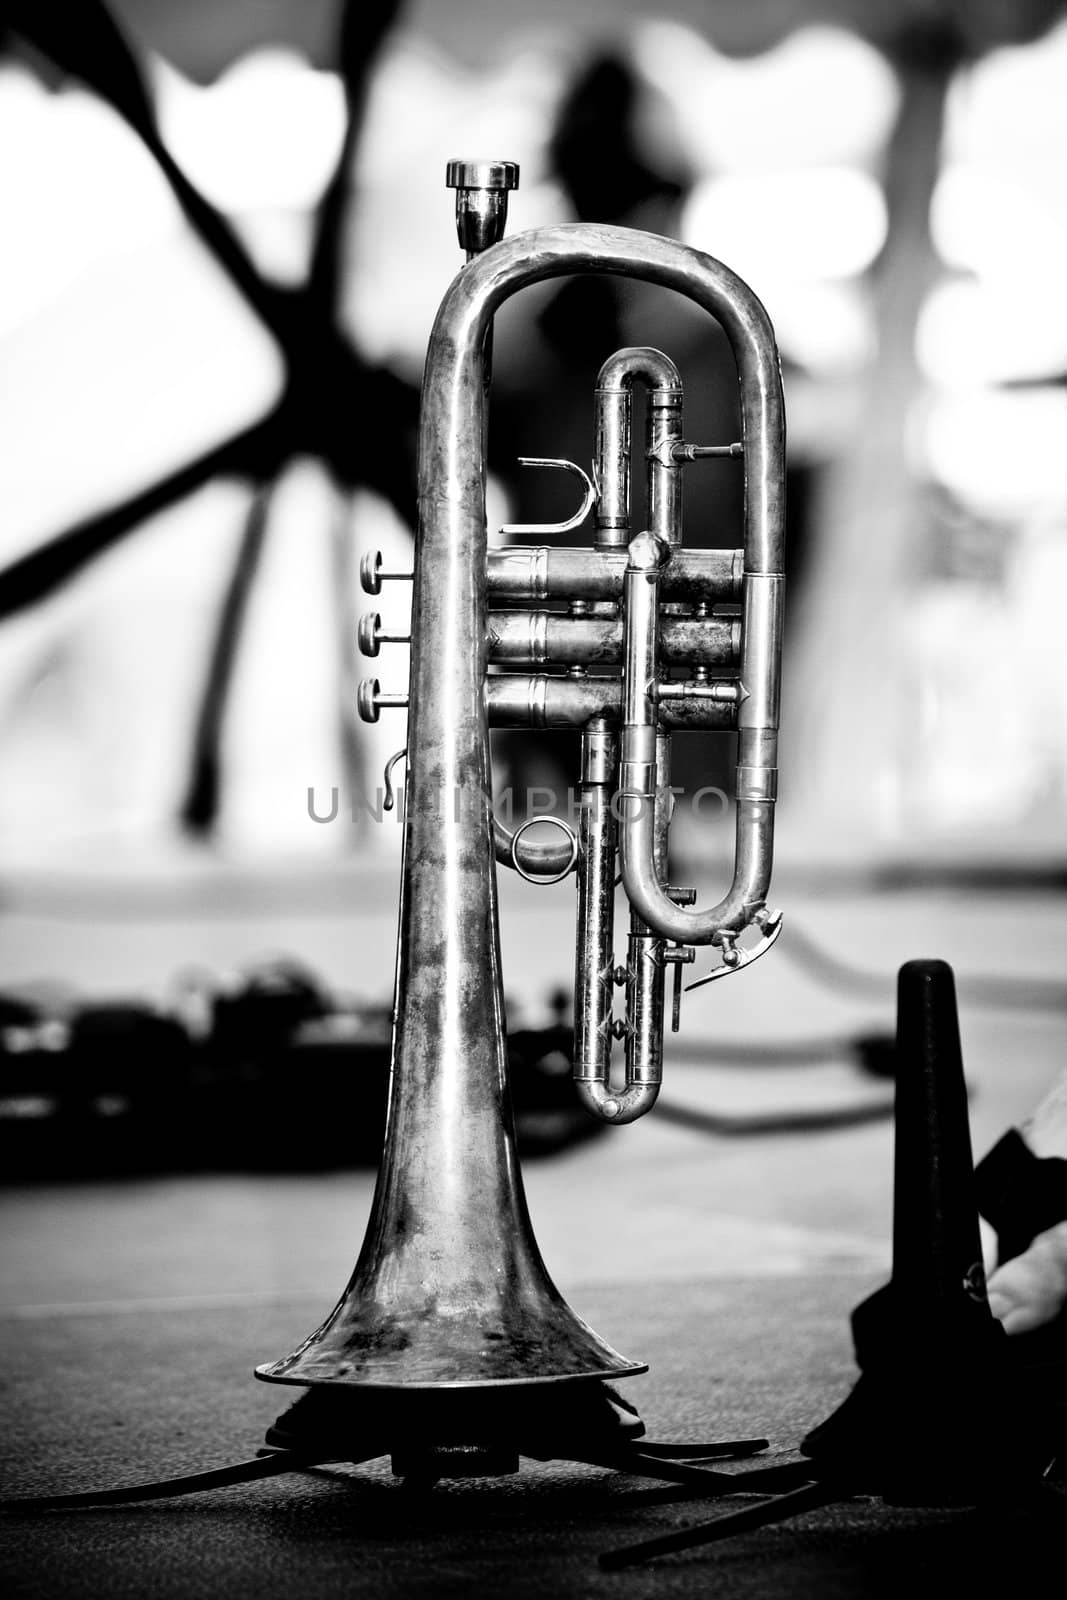 Trumpet by micahbowerbank